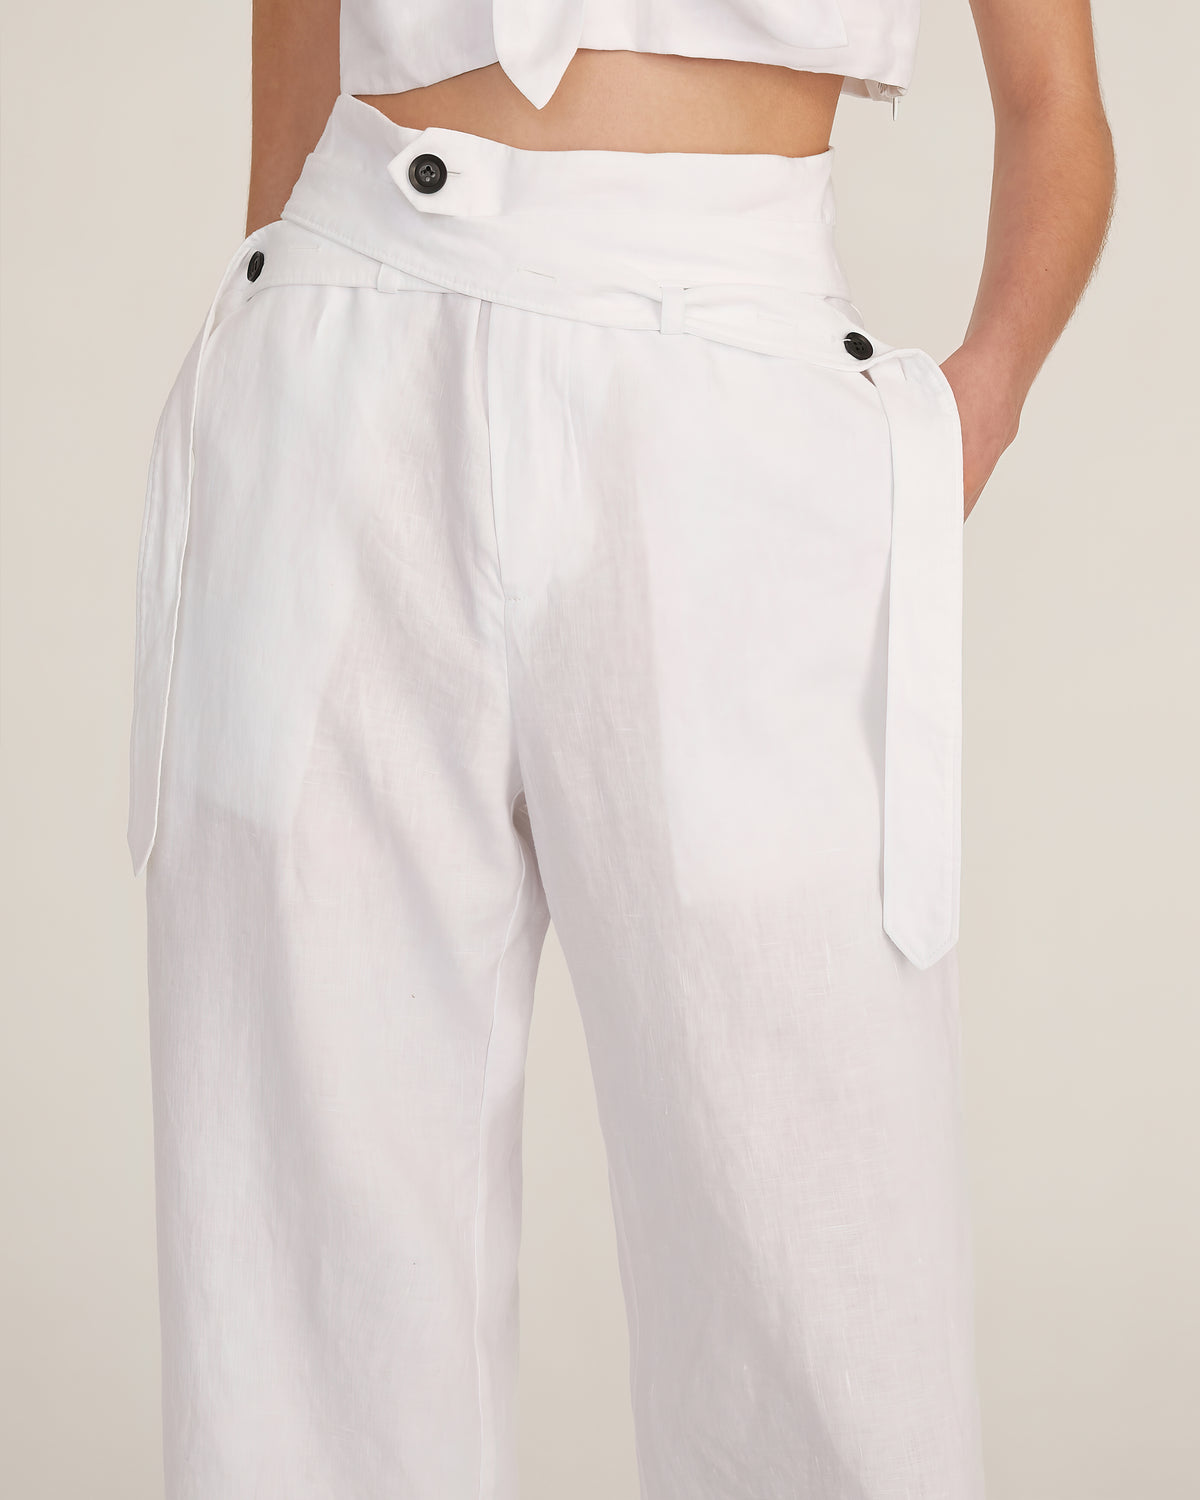 Artie Linen Wrap Pant in Linen White